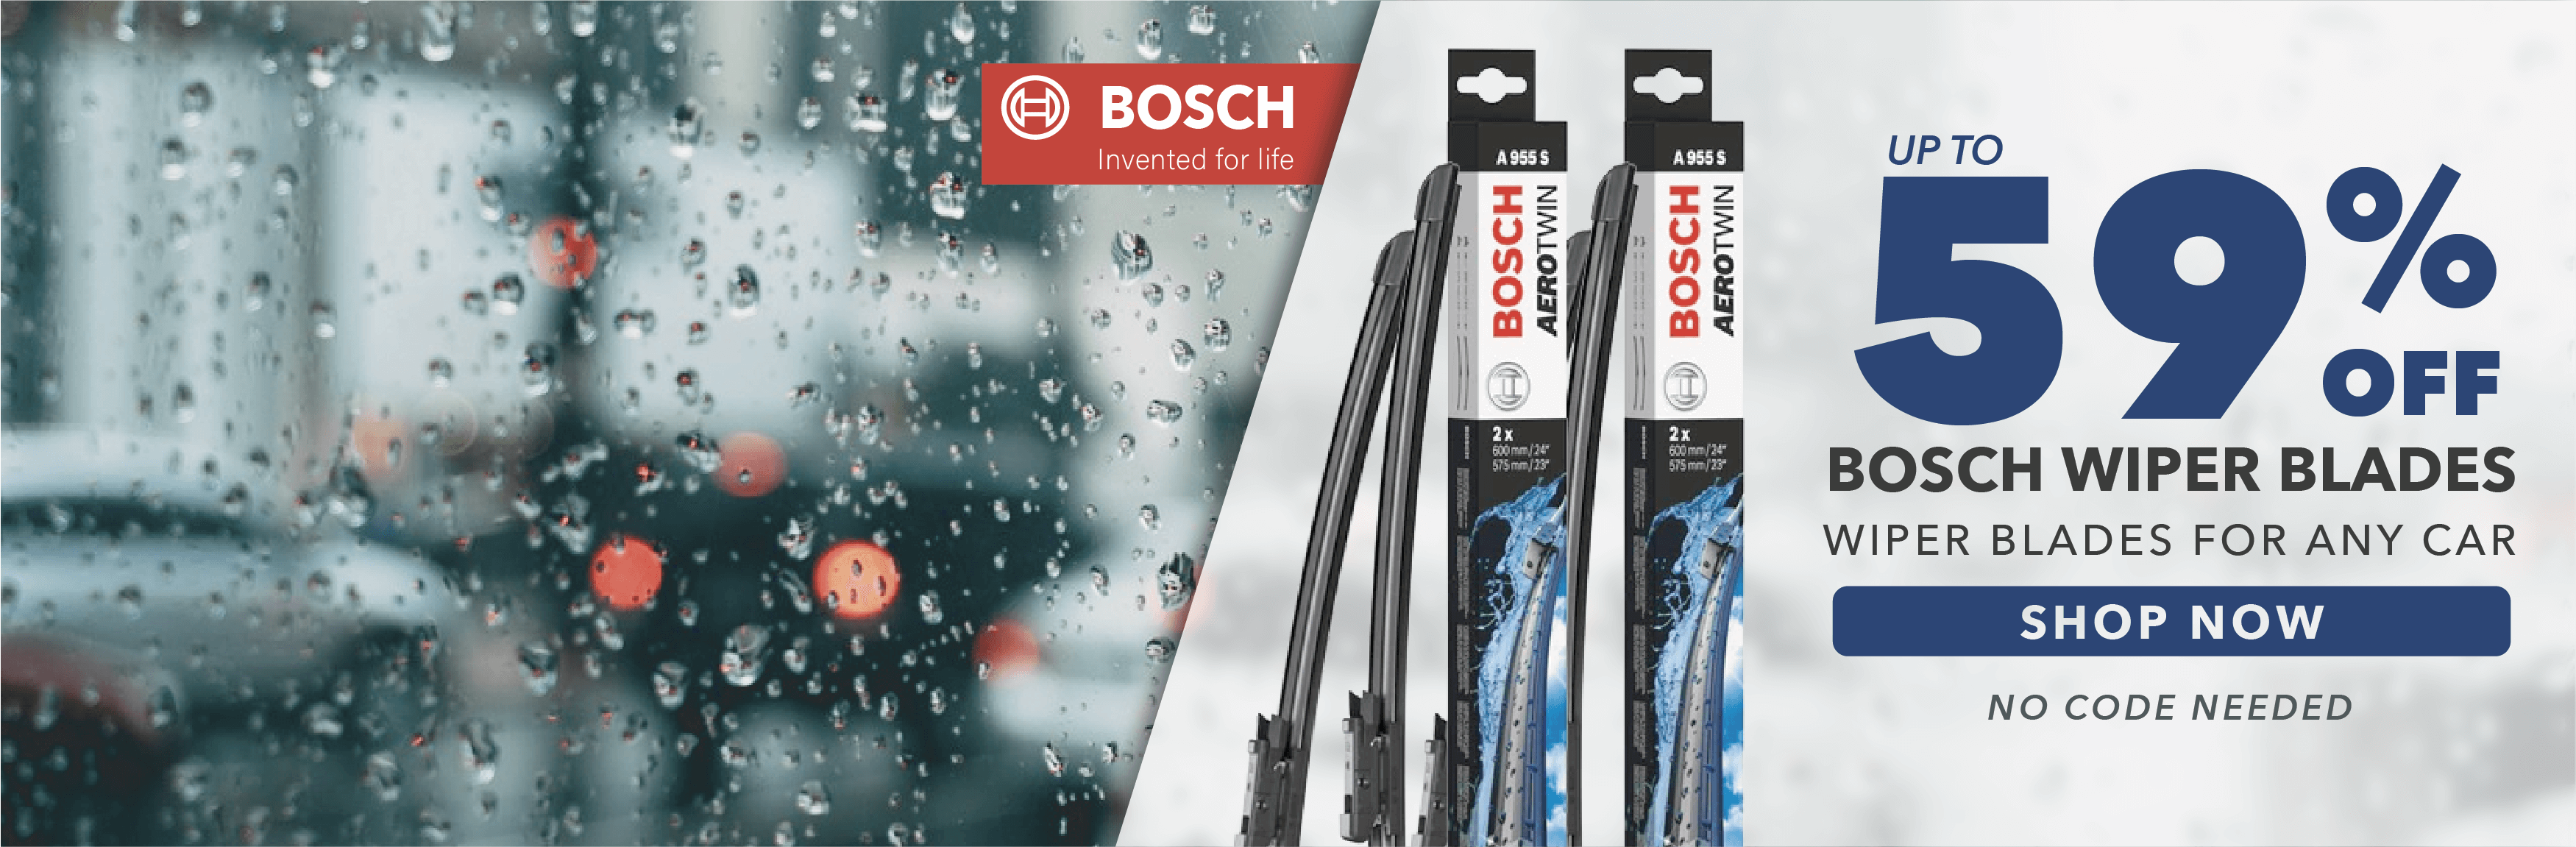 Save 59% on Bosch Wiper Blades